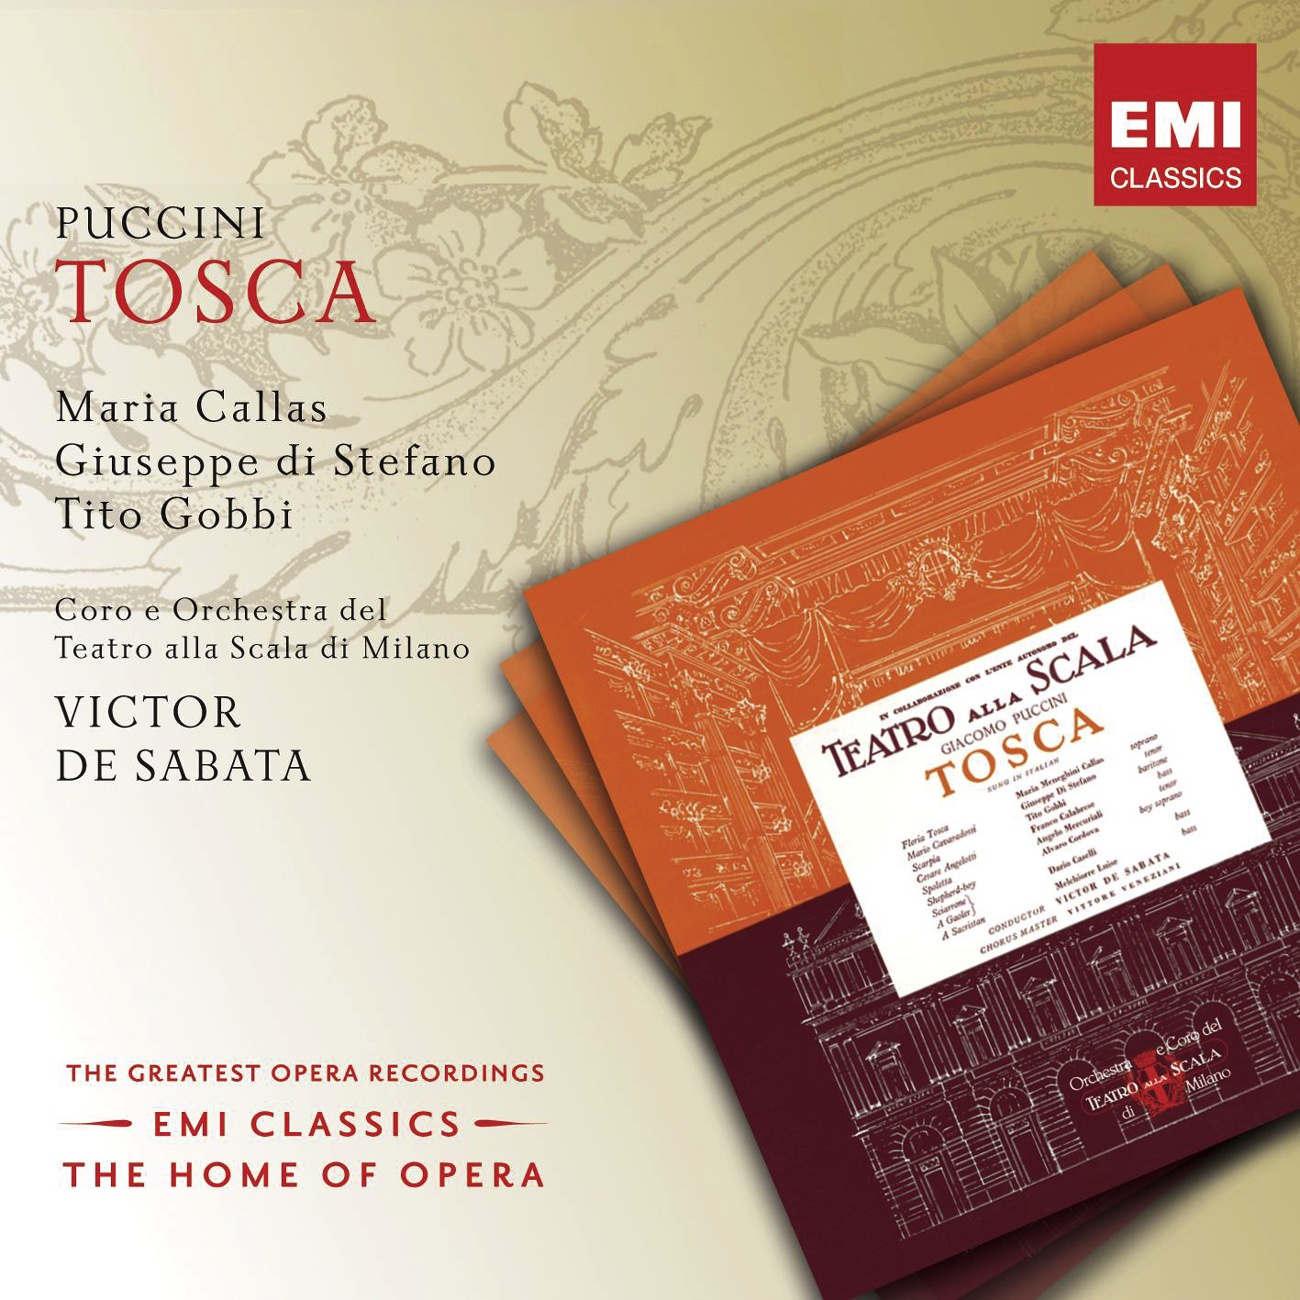 Tosca 2002 Digital Remaster, ACT TWO: Tosca e un buon falco! Scarpia Sciarrone